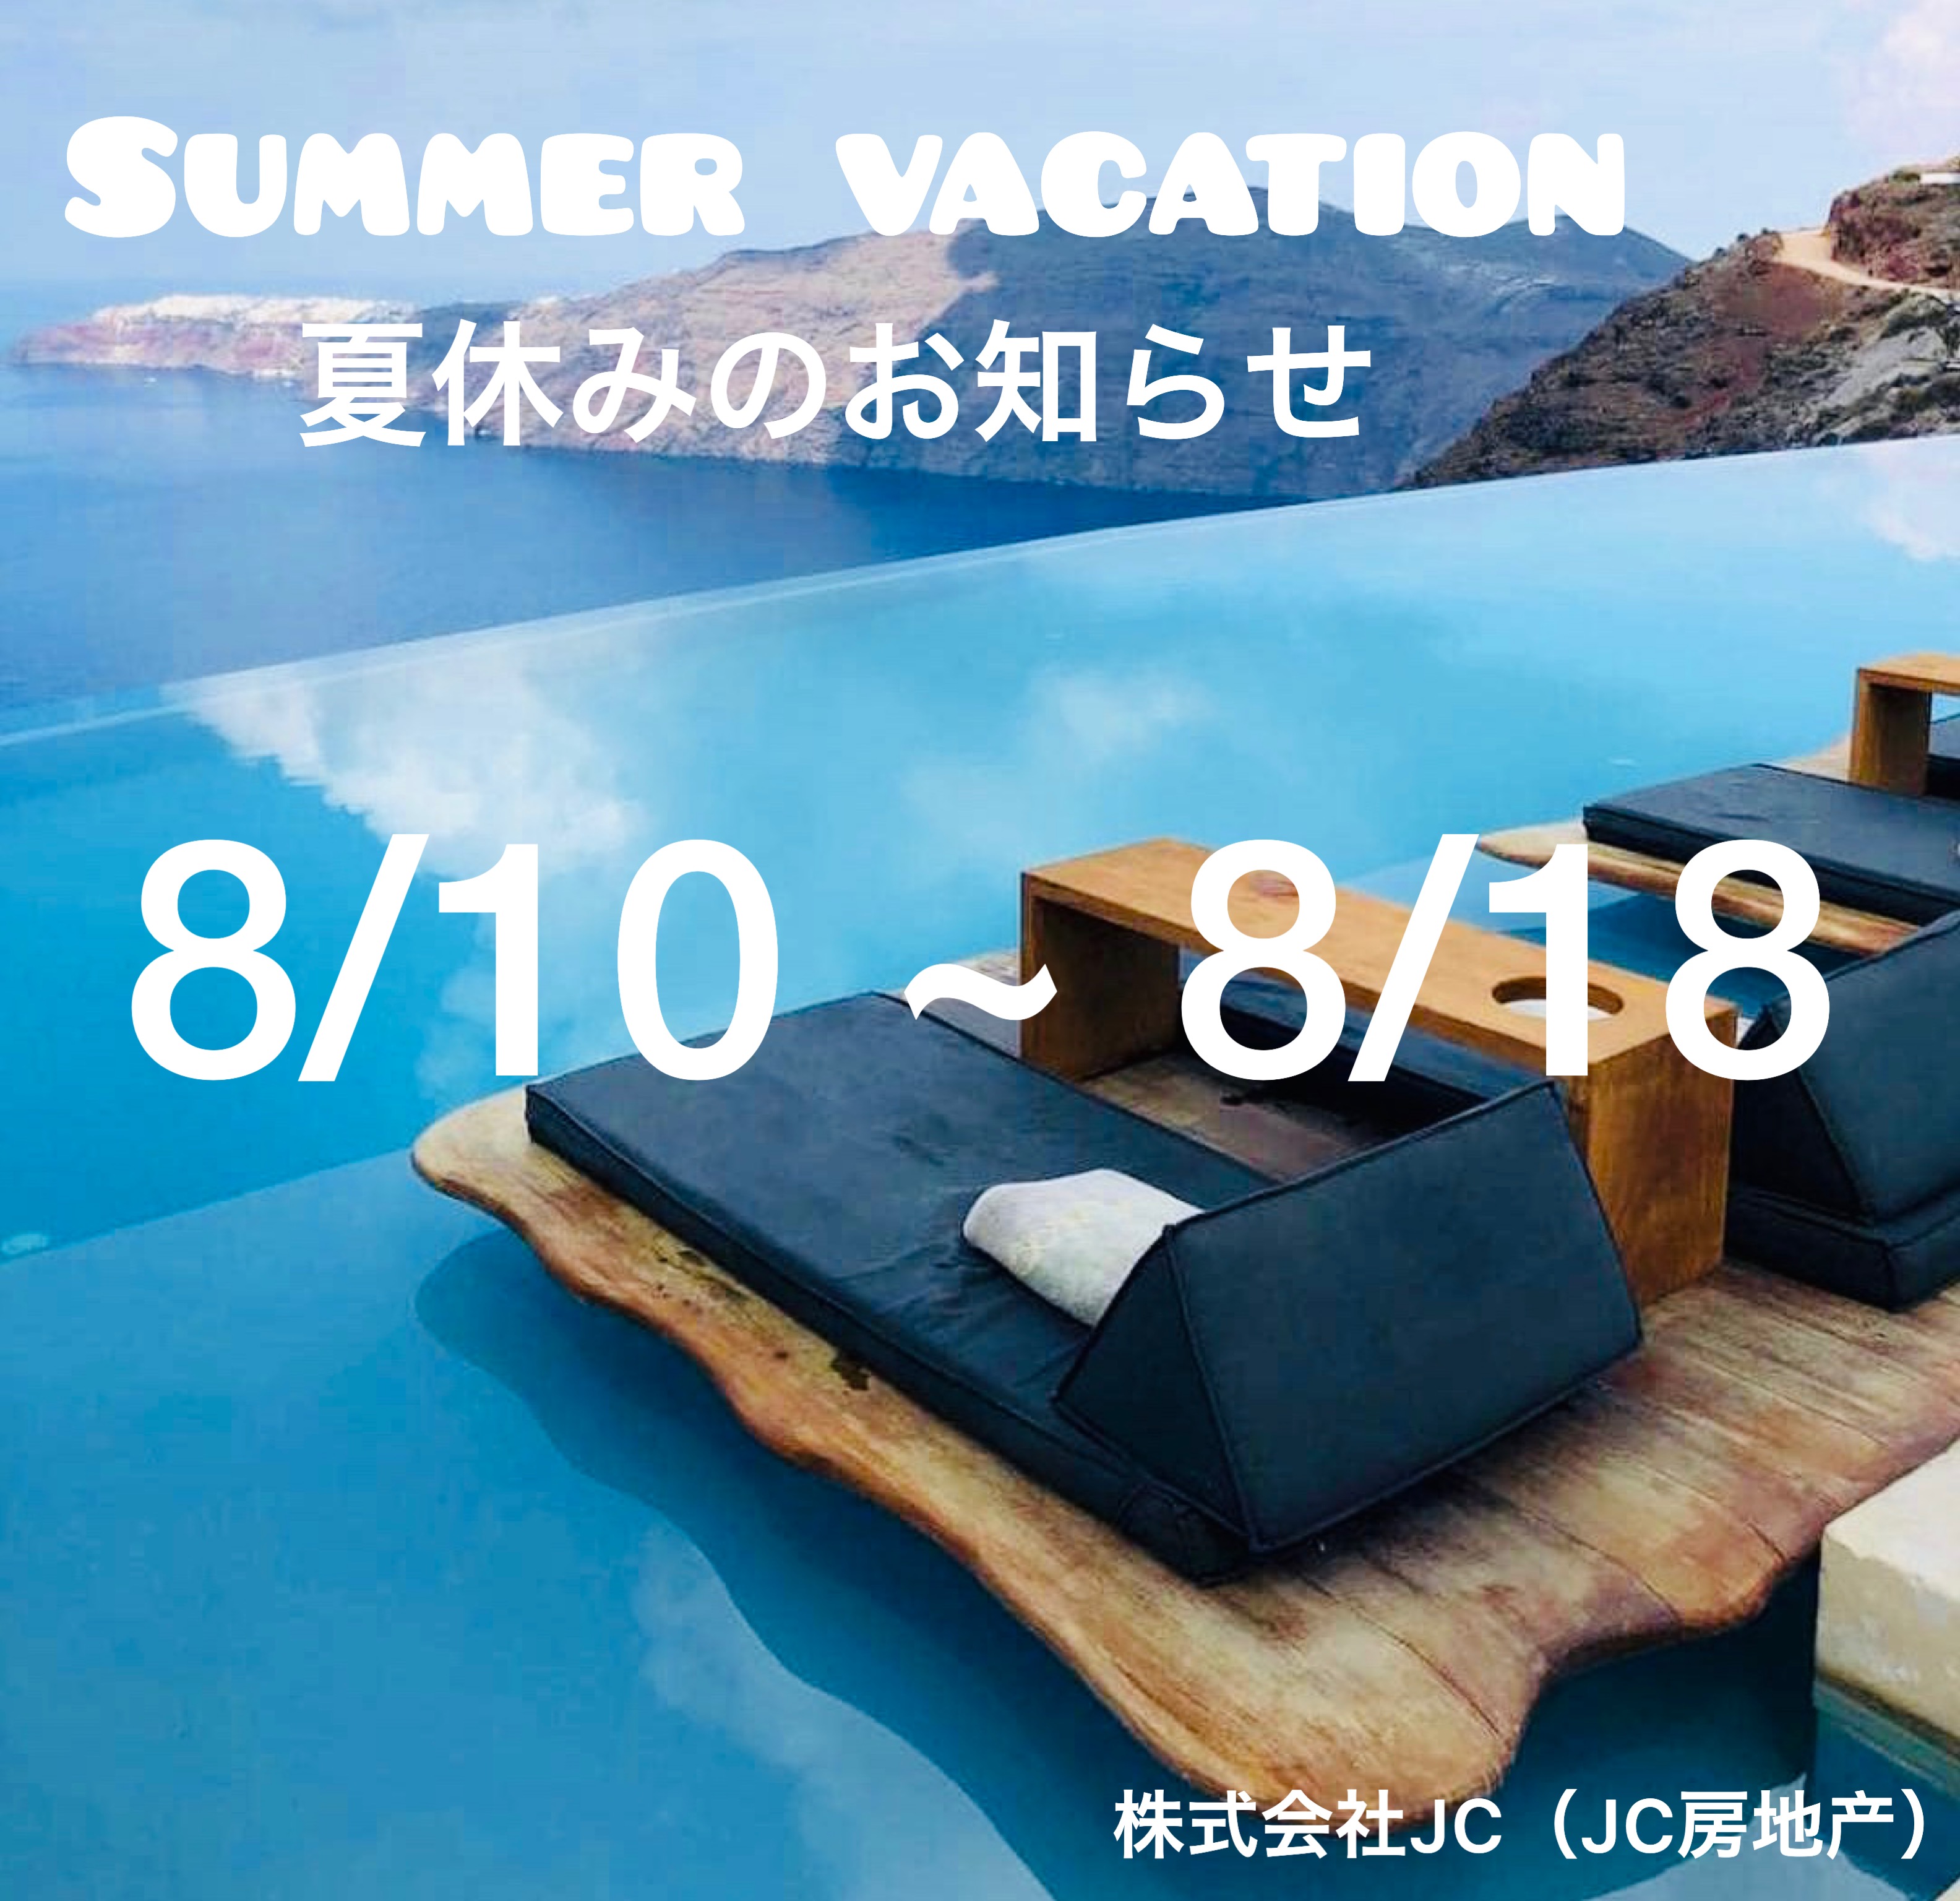 ☆夏季休暇のお知らせ☆